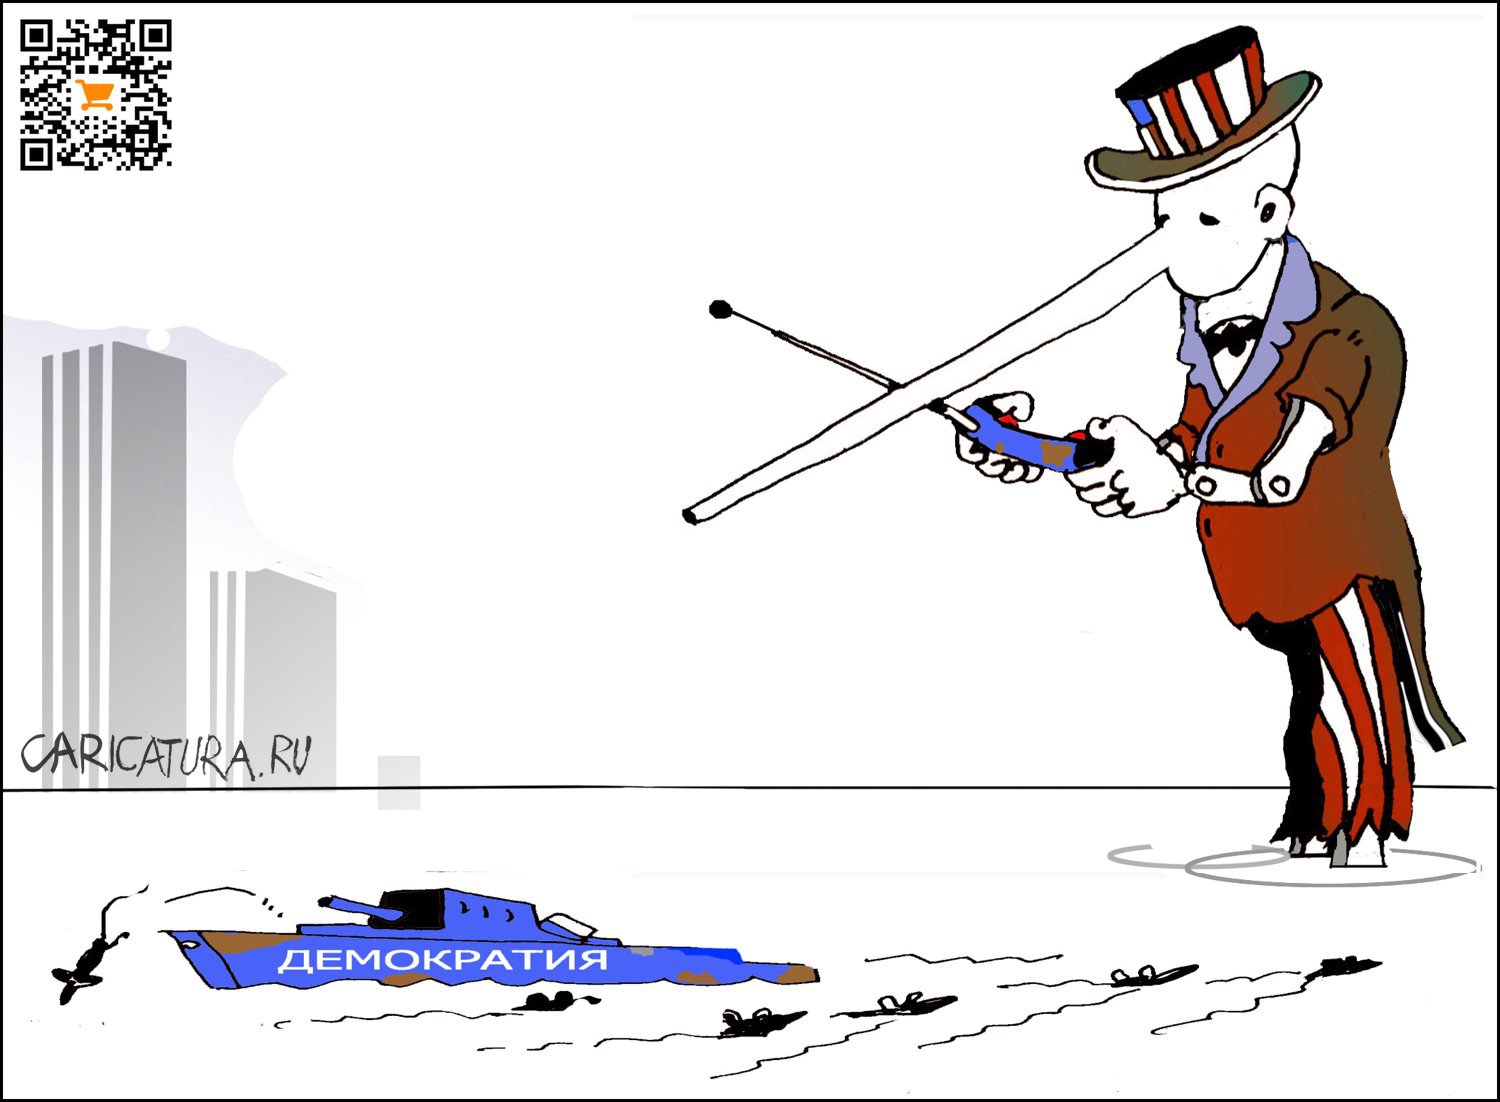 Карикатура "Западная демократия", Александр Уваров